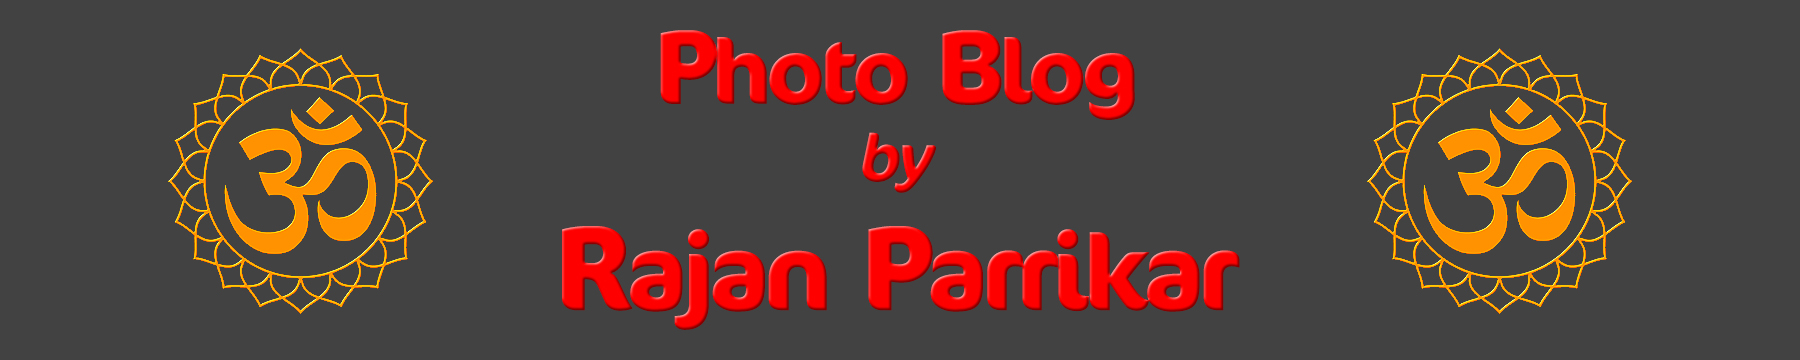 Rajan Parrikar Photo Blog